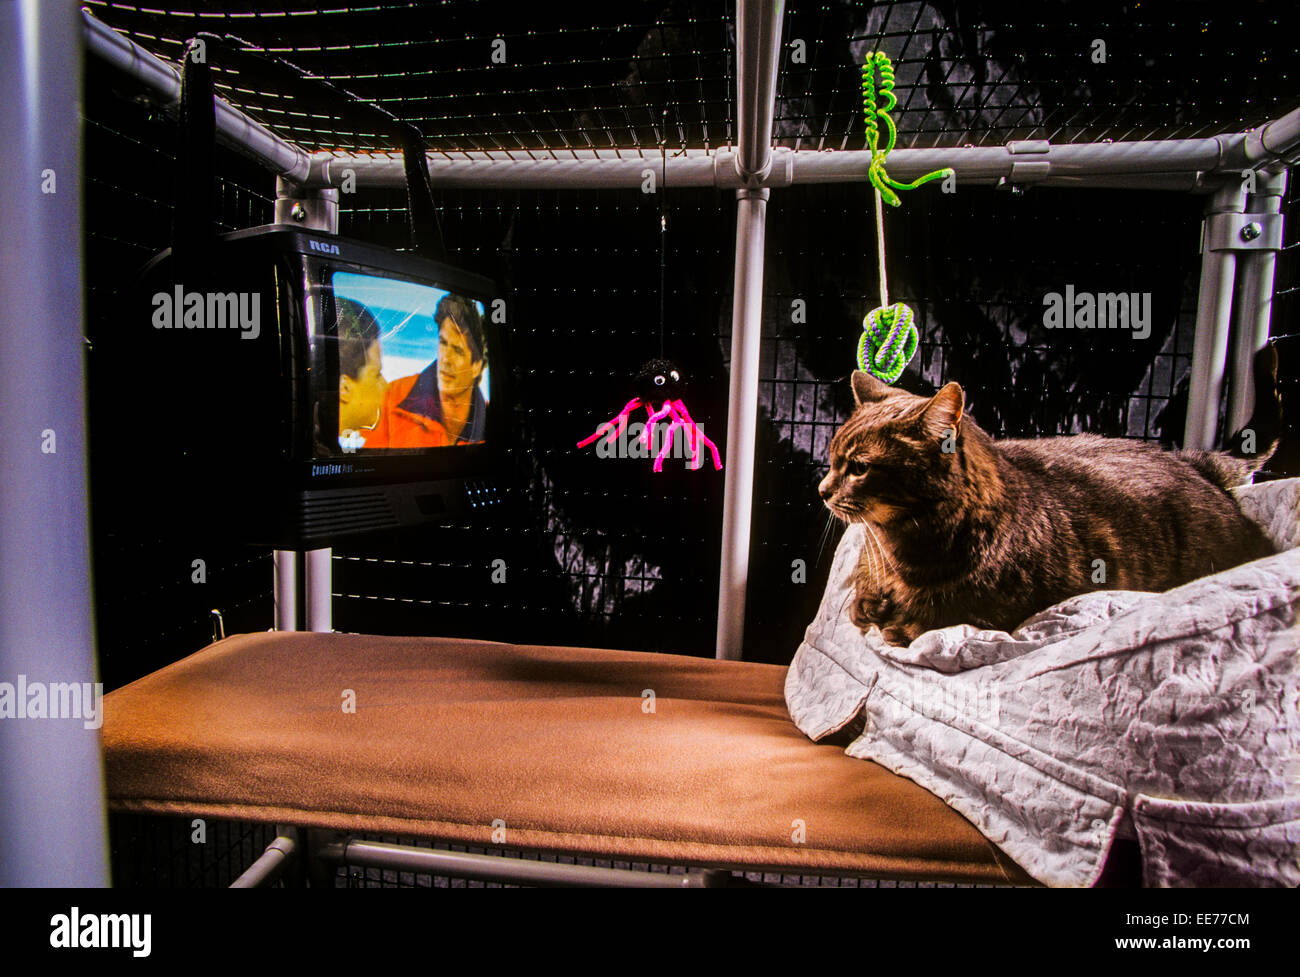 LOS ANGELES, CA – ABRIL 01: Un gato disfruta de su jaula de lujo en los Angeles, California el 01 de abril de 1996. Foto de stock